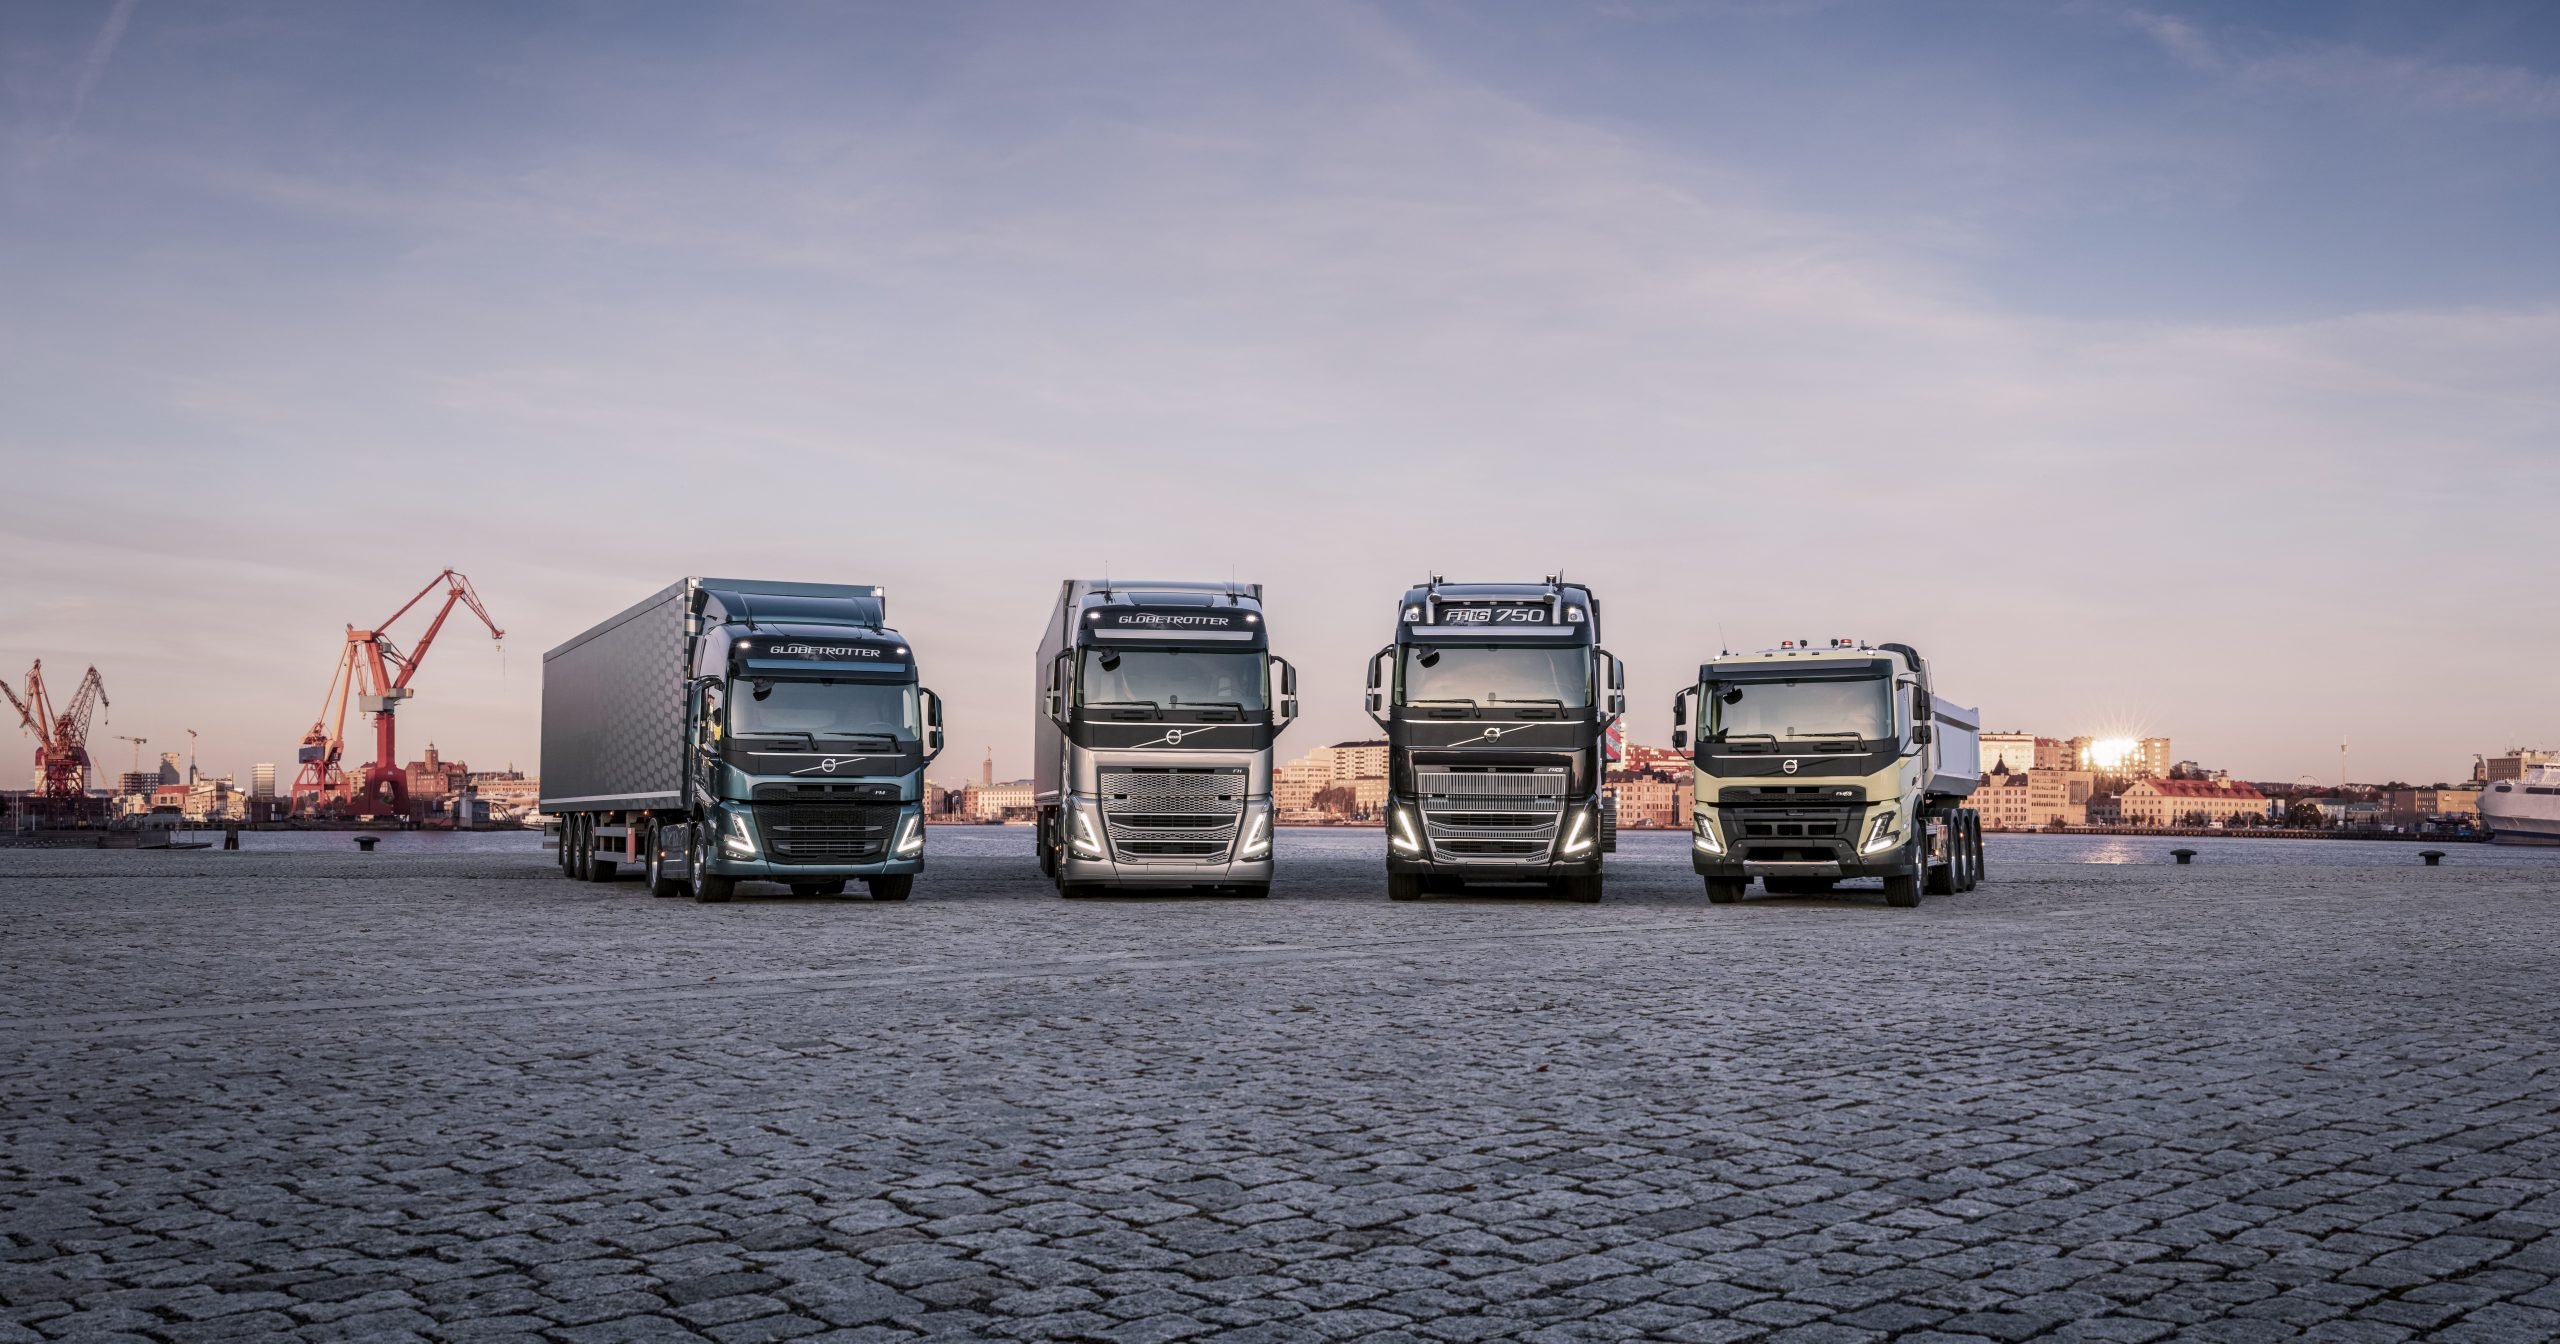 Безопасность, производительность, комфорт: Volvo Trucks представляет новое поколение грузовиков